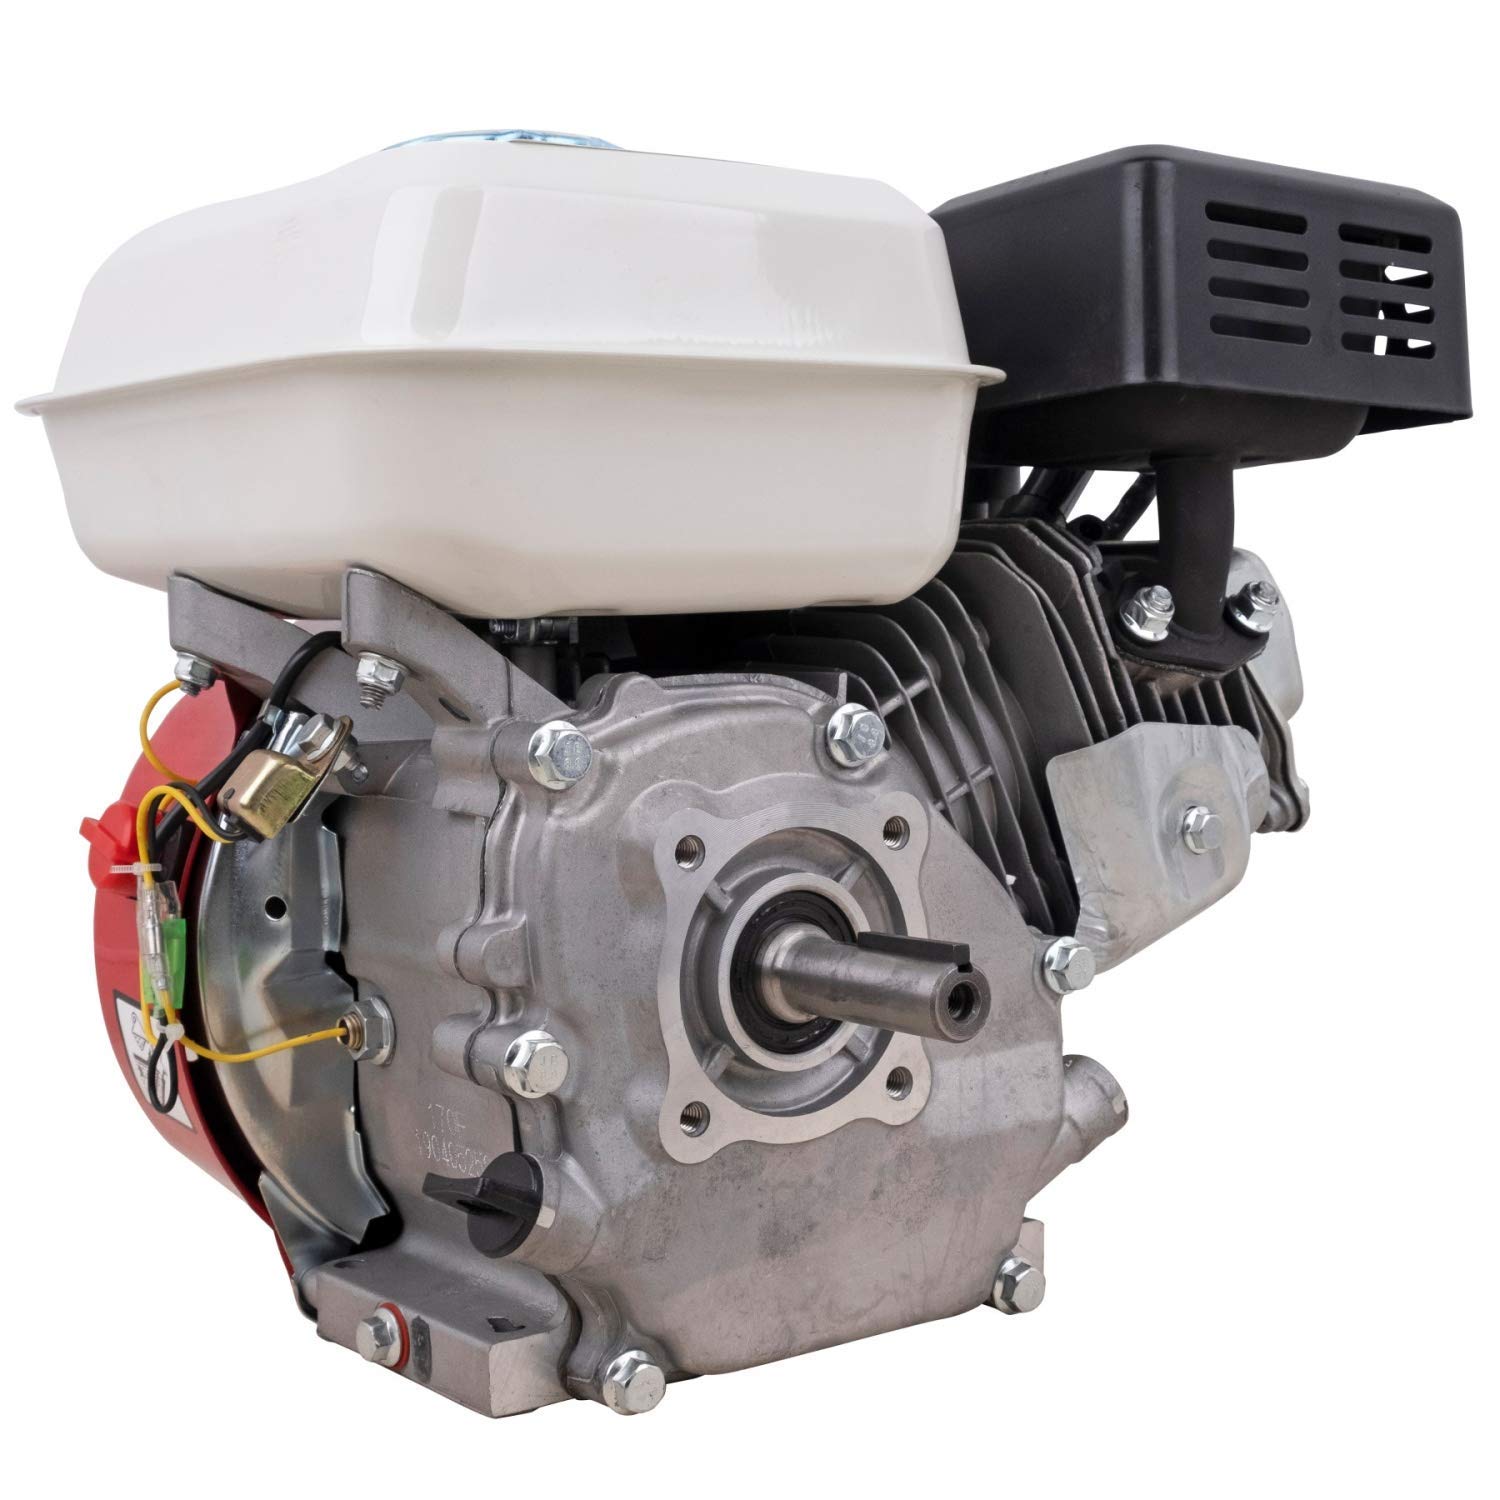 DeTec. 7 PS 5,2 kW Benzinmotor Standmotor Antriebsmotor Kartmotor Industriemotor Austauschmotor | Für viele Gartengeräte verwendbar | 1 Zylinder 4-Takt 210 ccm luftgekühlt